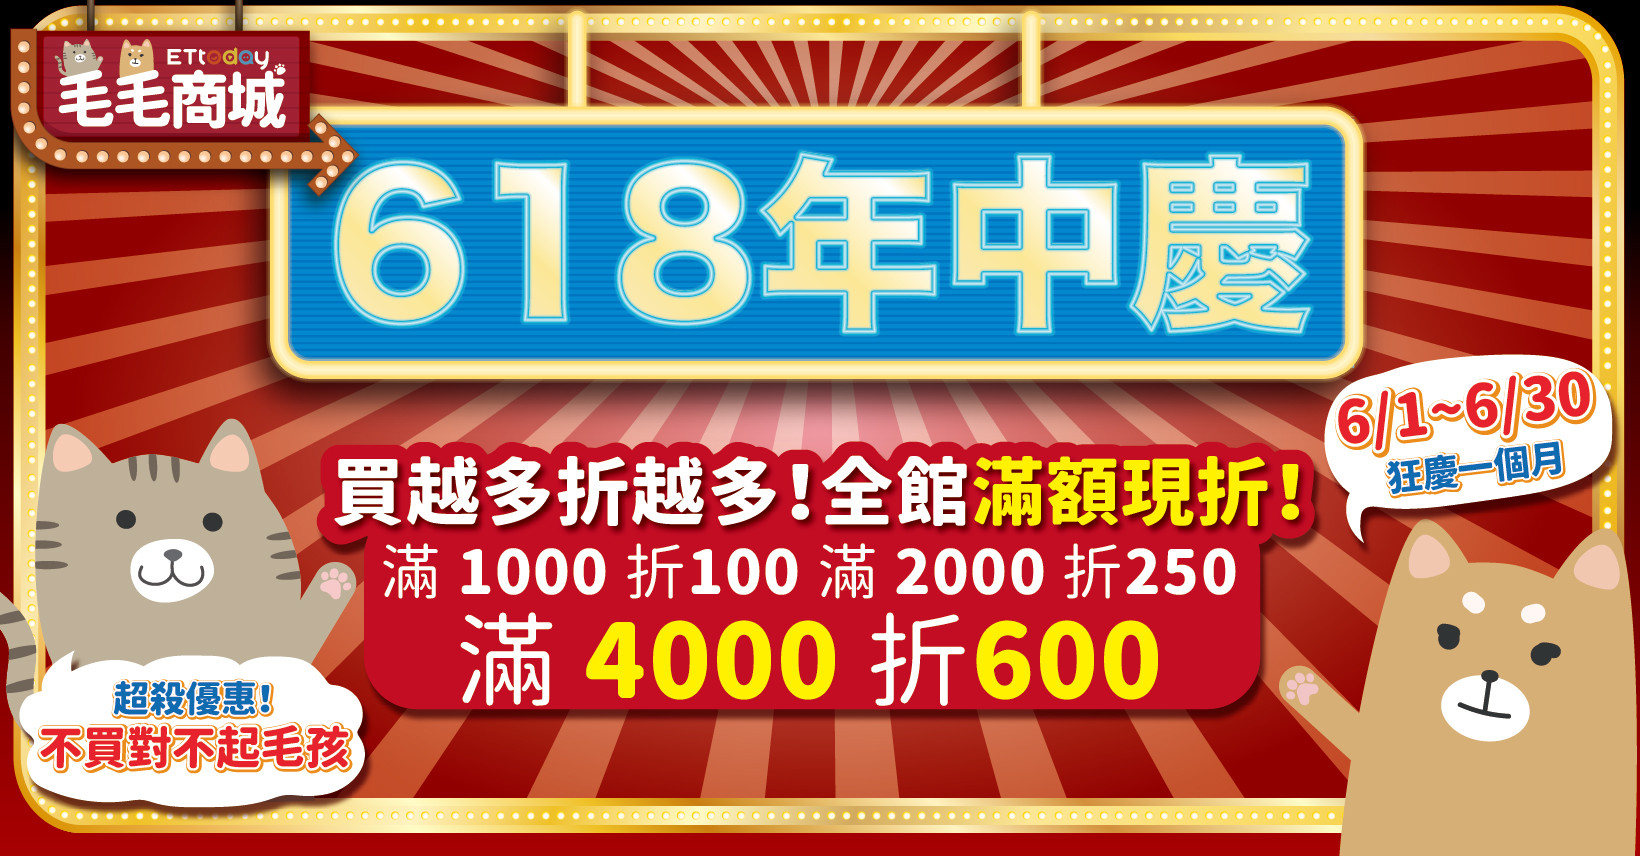 毛毛商城「618年中慶」5折專區限時開啟　滿1000再折100買越多折越多